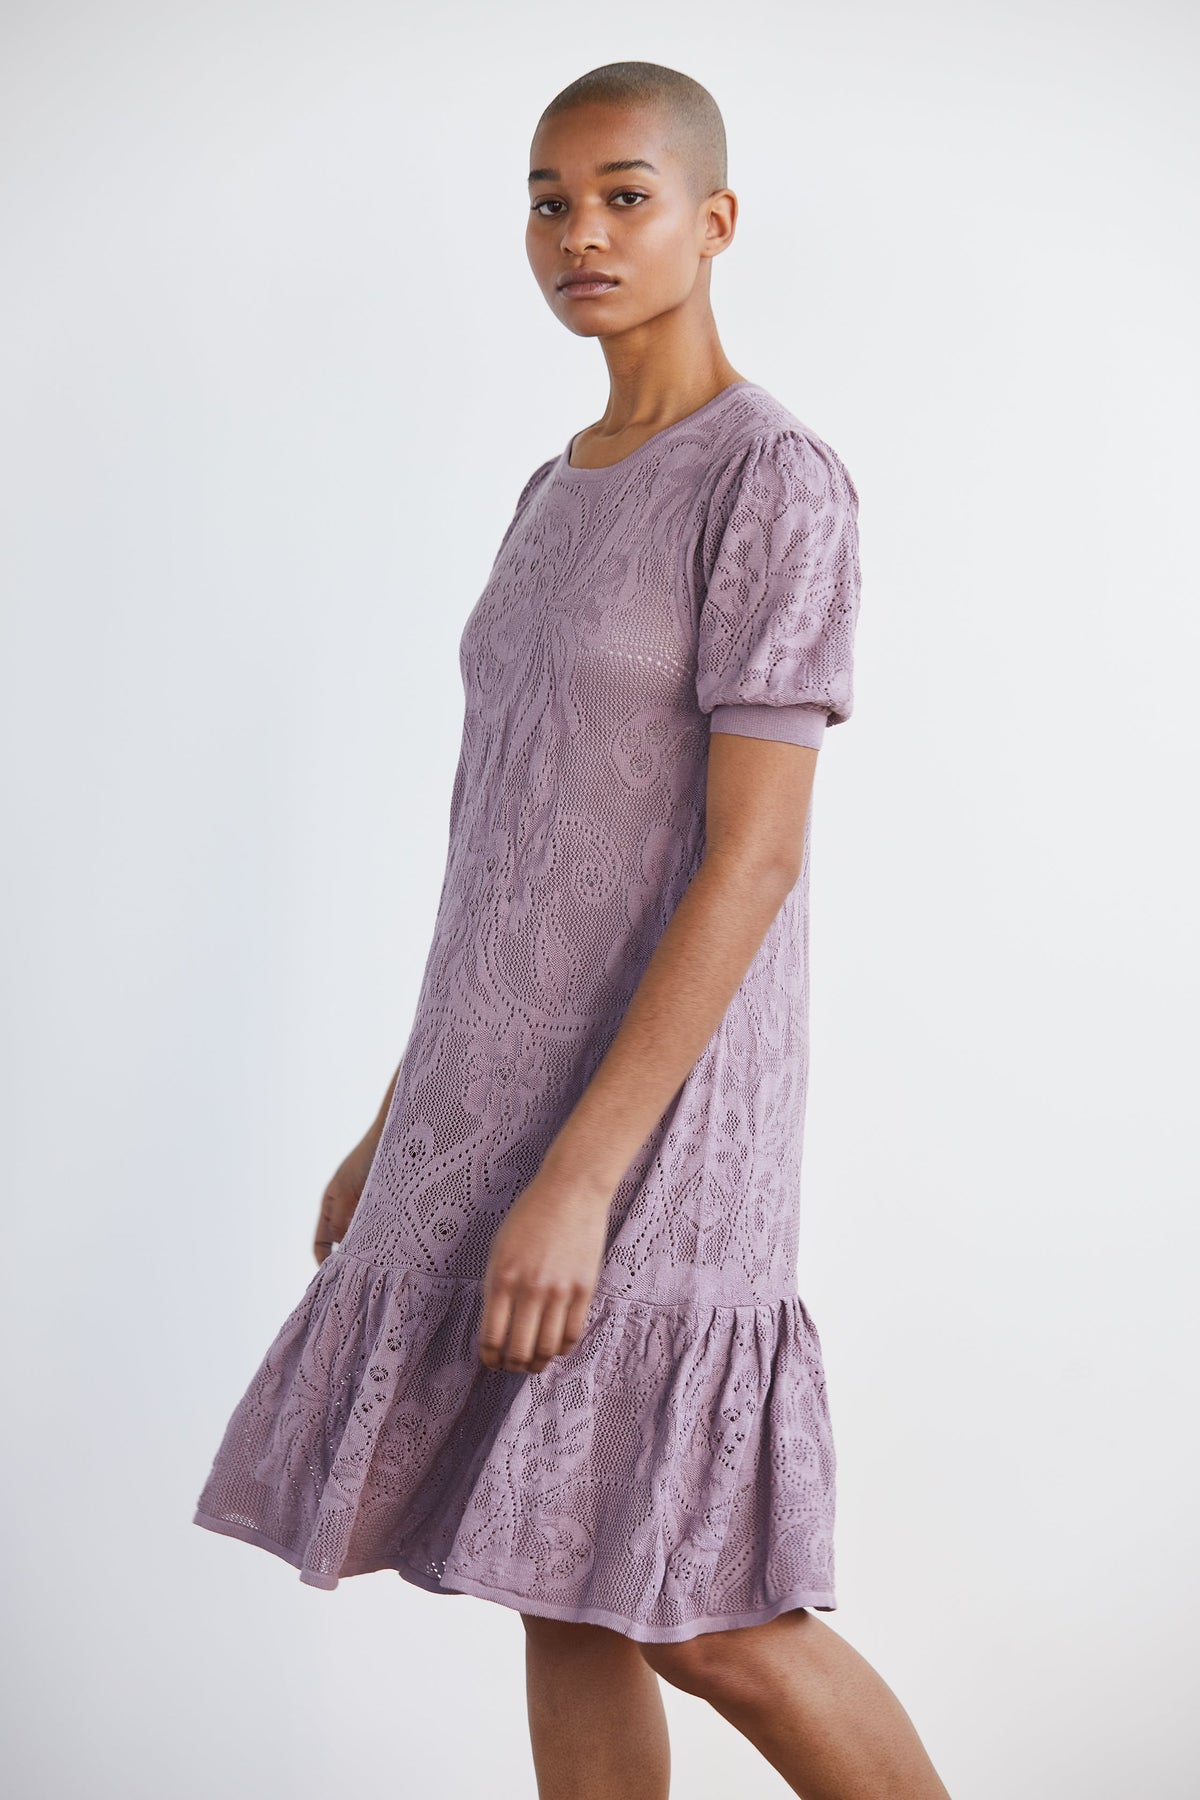 Adult Lace Puff Dress - Antique Mauve